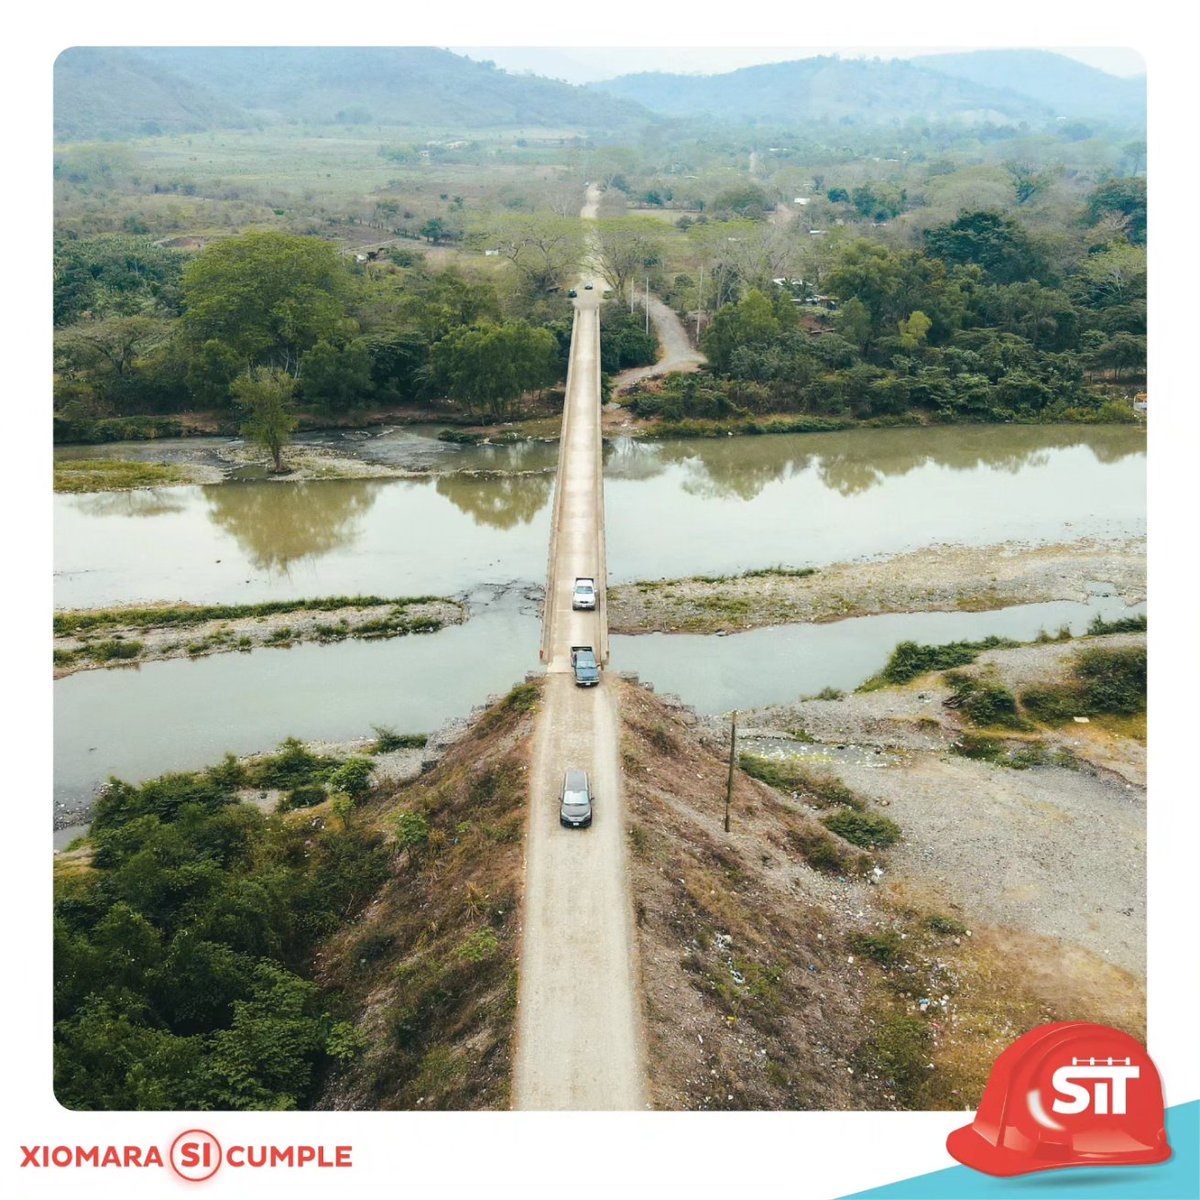 La SIT tuvo una exitosa y transparente apertura de ofertas para la rehabilitación del puente Manacal sobre el río Chamelecón en S.P.S., Cortés. Este proyecto permitirá la fluidez en el tráfico vehicular beneficiando a 400,000 personas. ¡Estamos construyendo mejor HN!🇭🇳